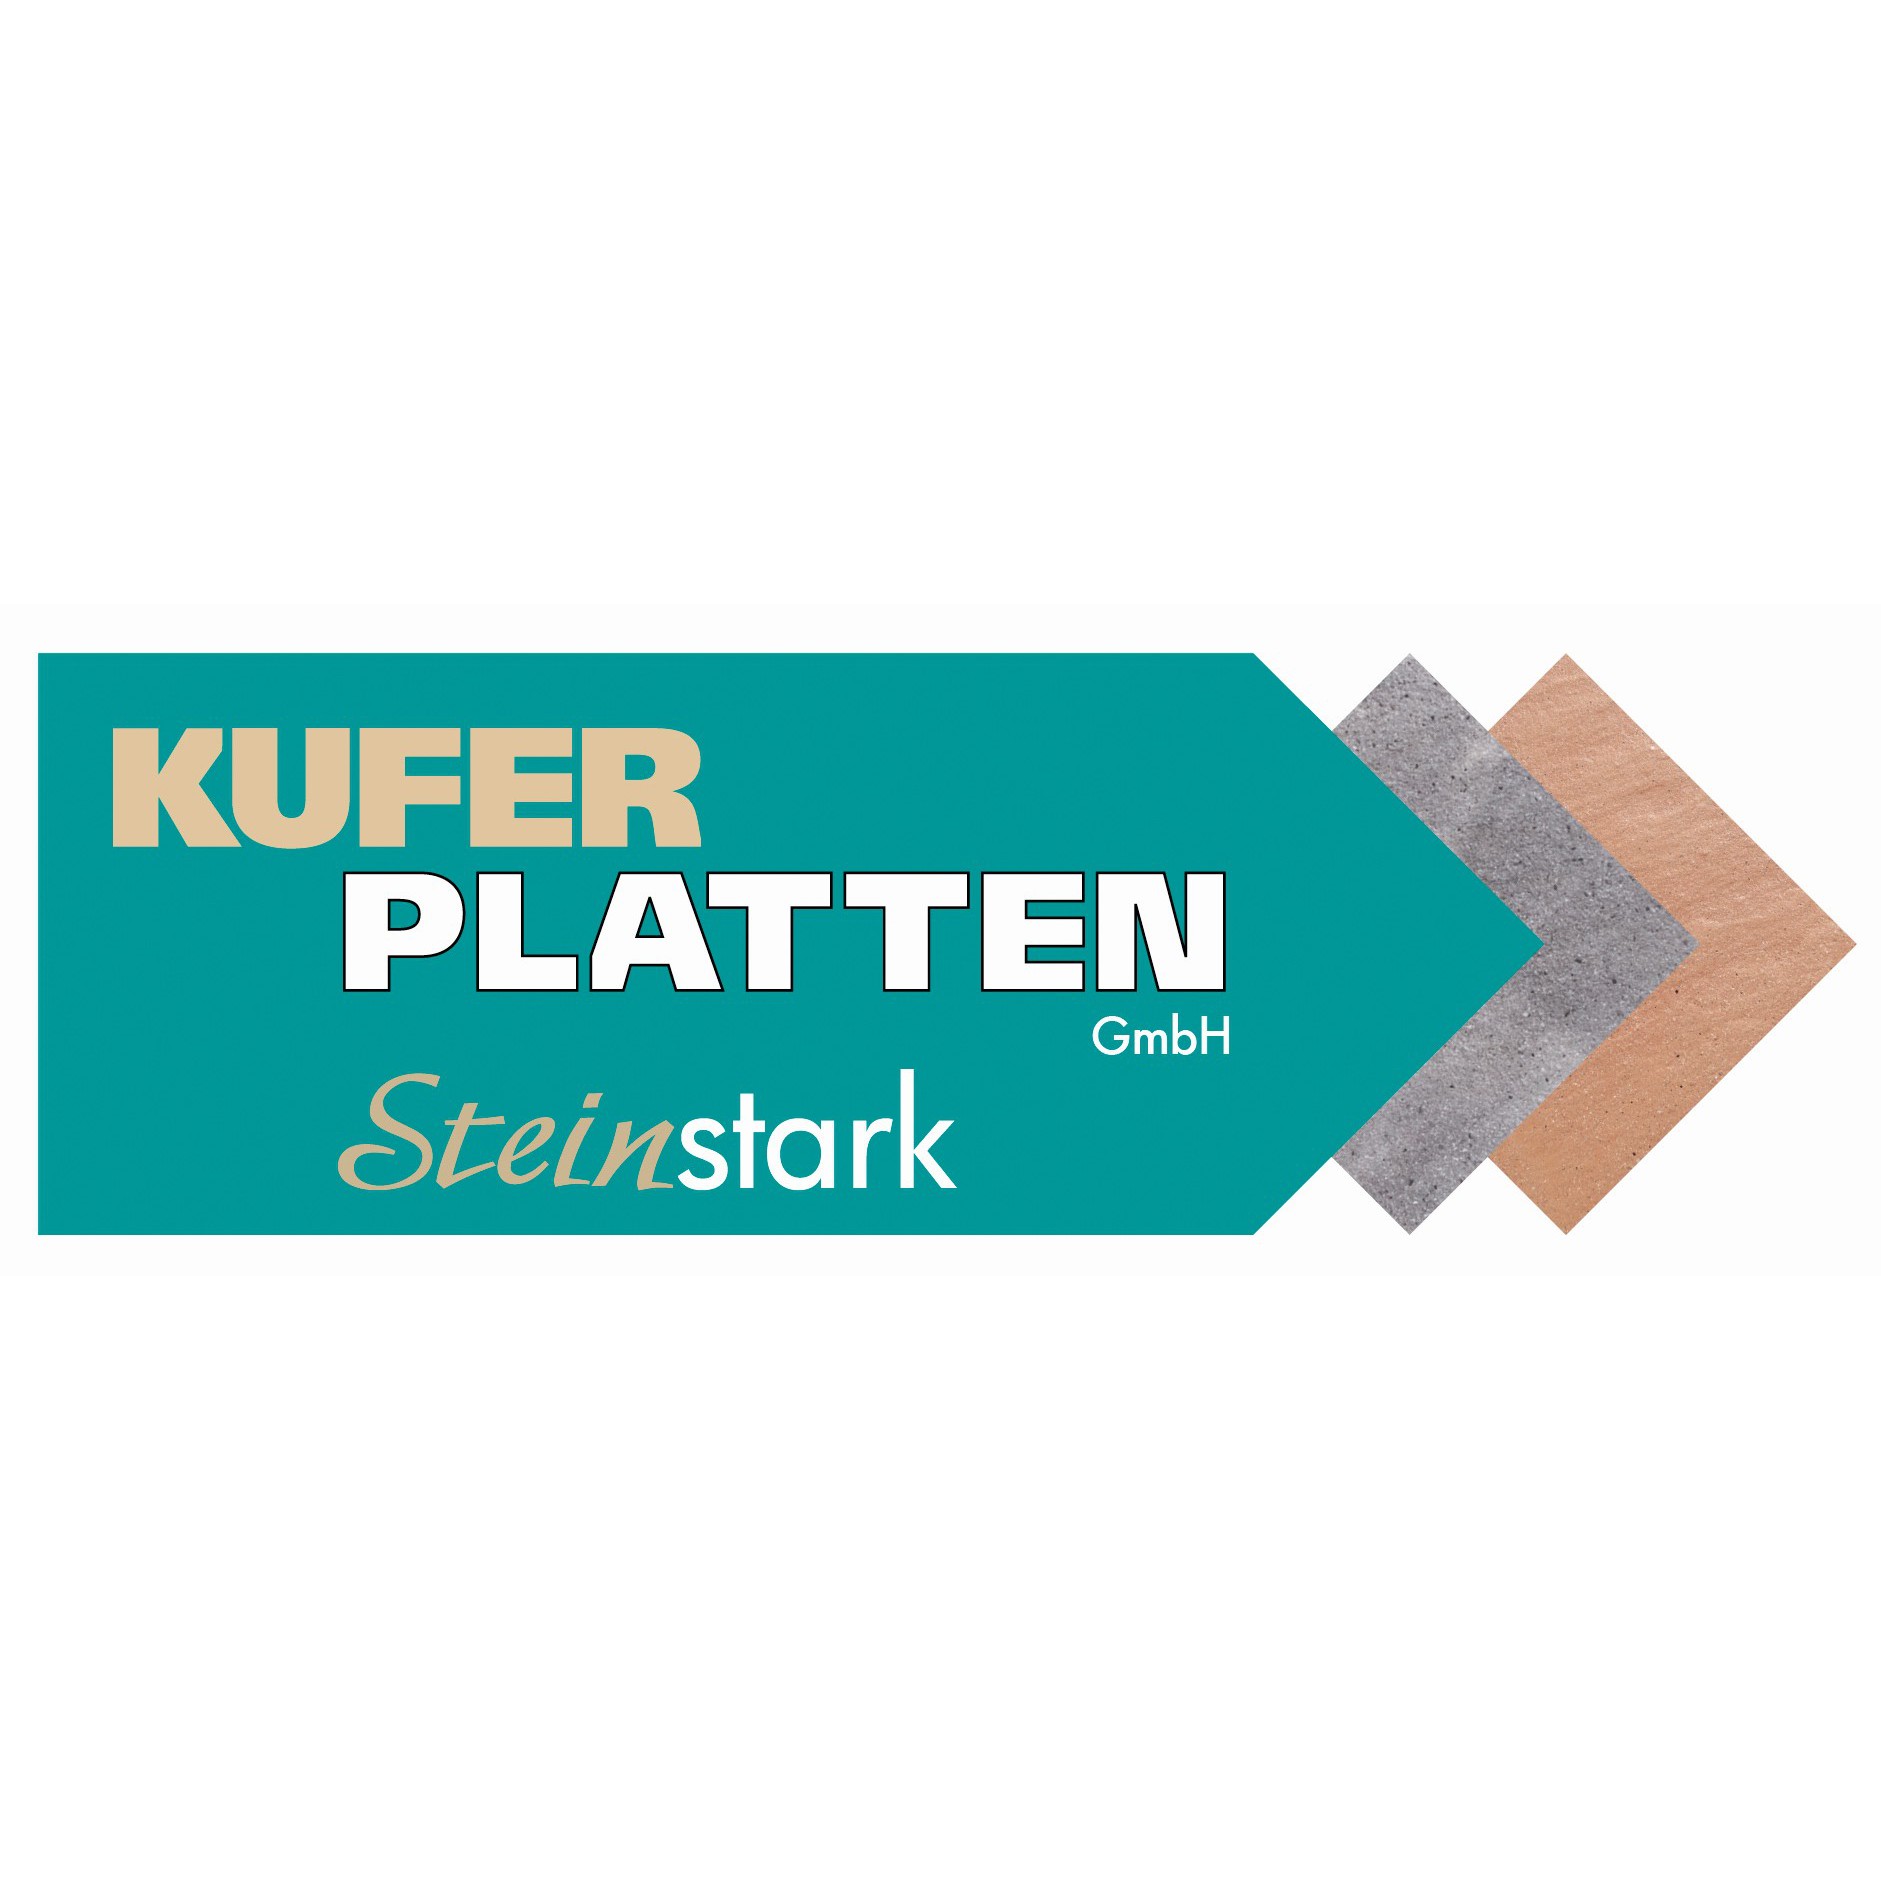 Kufer Platten GmbH in Neumarkt in der Oberpfalz - Logo